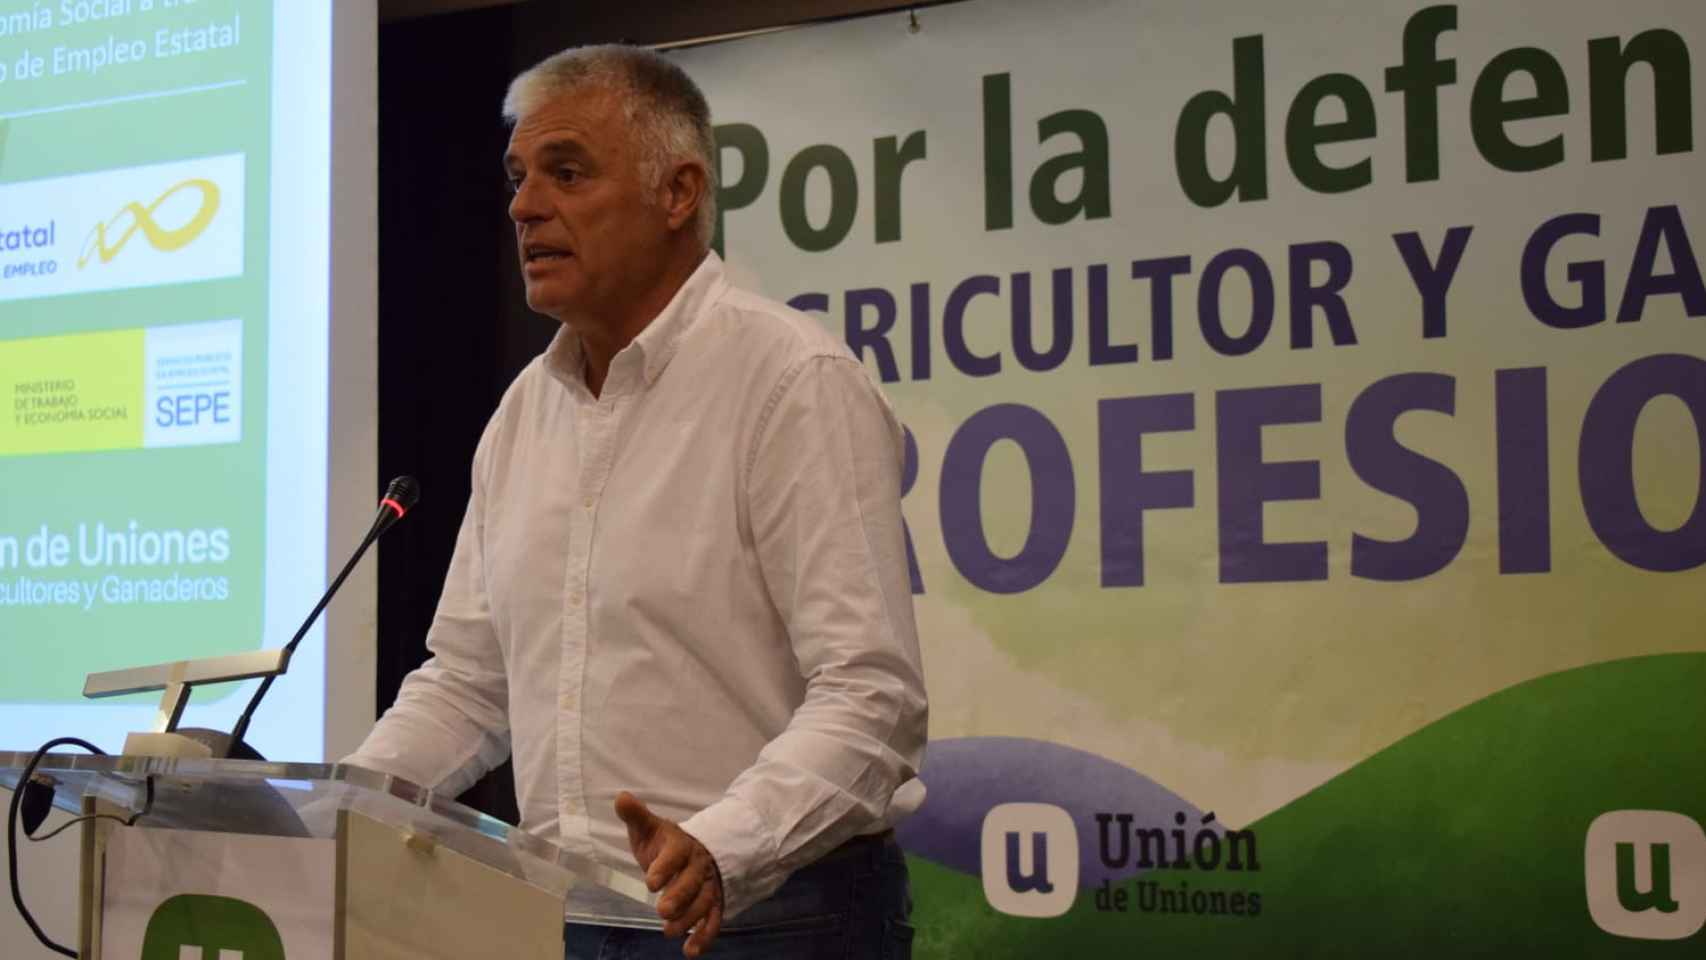 Luis Cortés durante una charla organizada por la Unión de Uniones